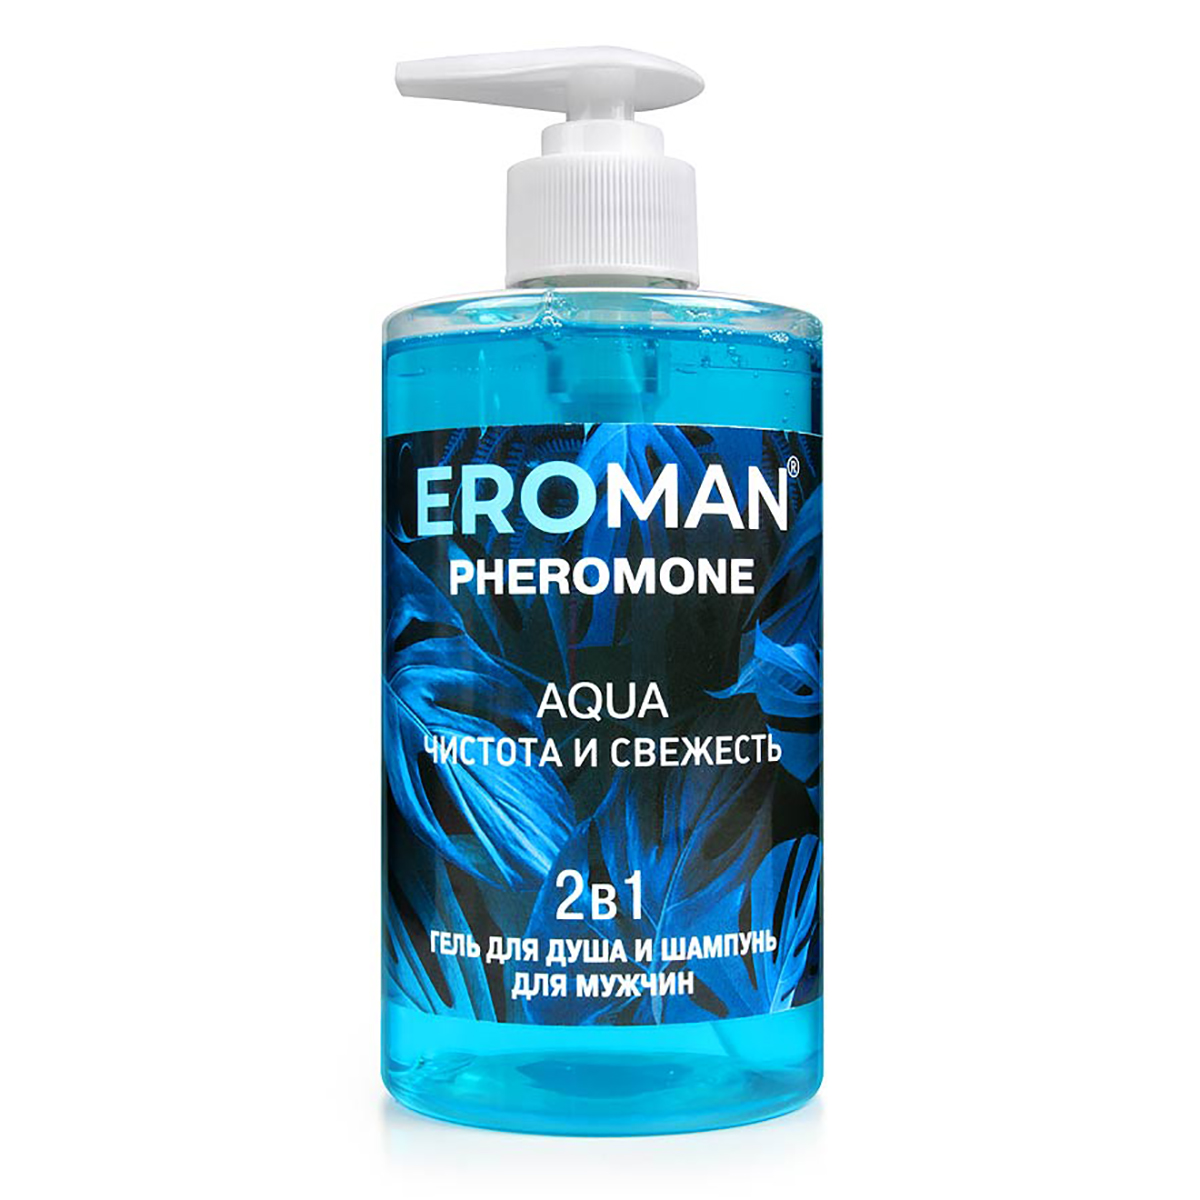 Биоритм Eroman Аqua - Гель для душа и шампунь с феромонами, 430 мл